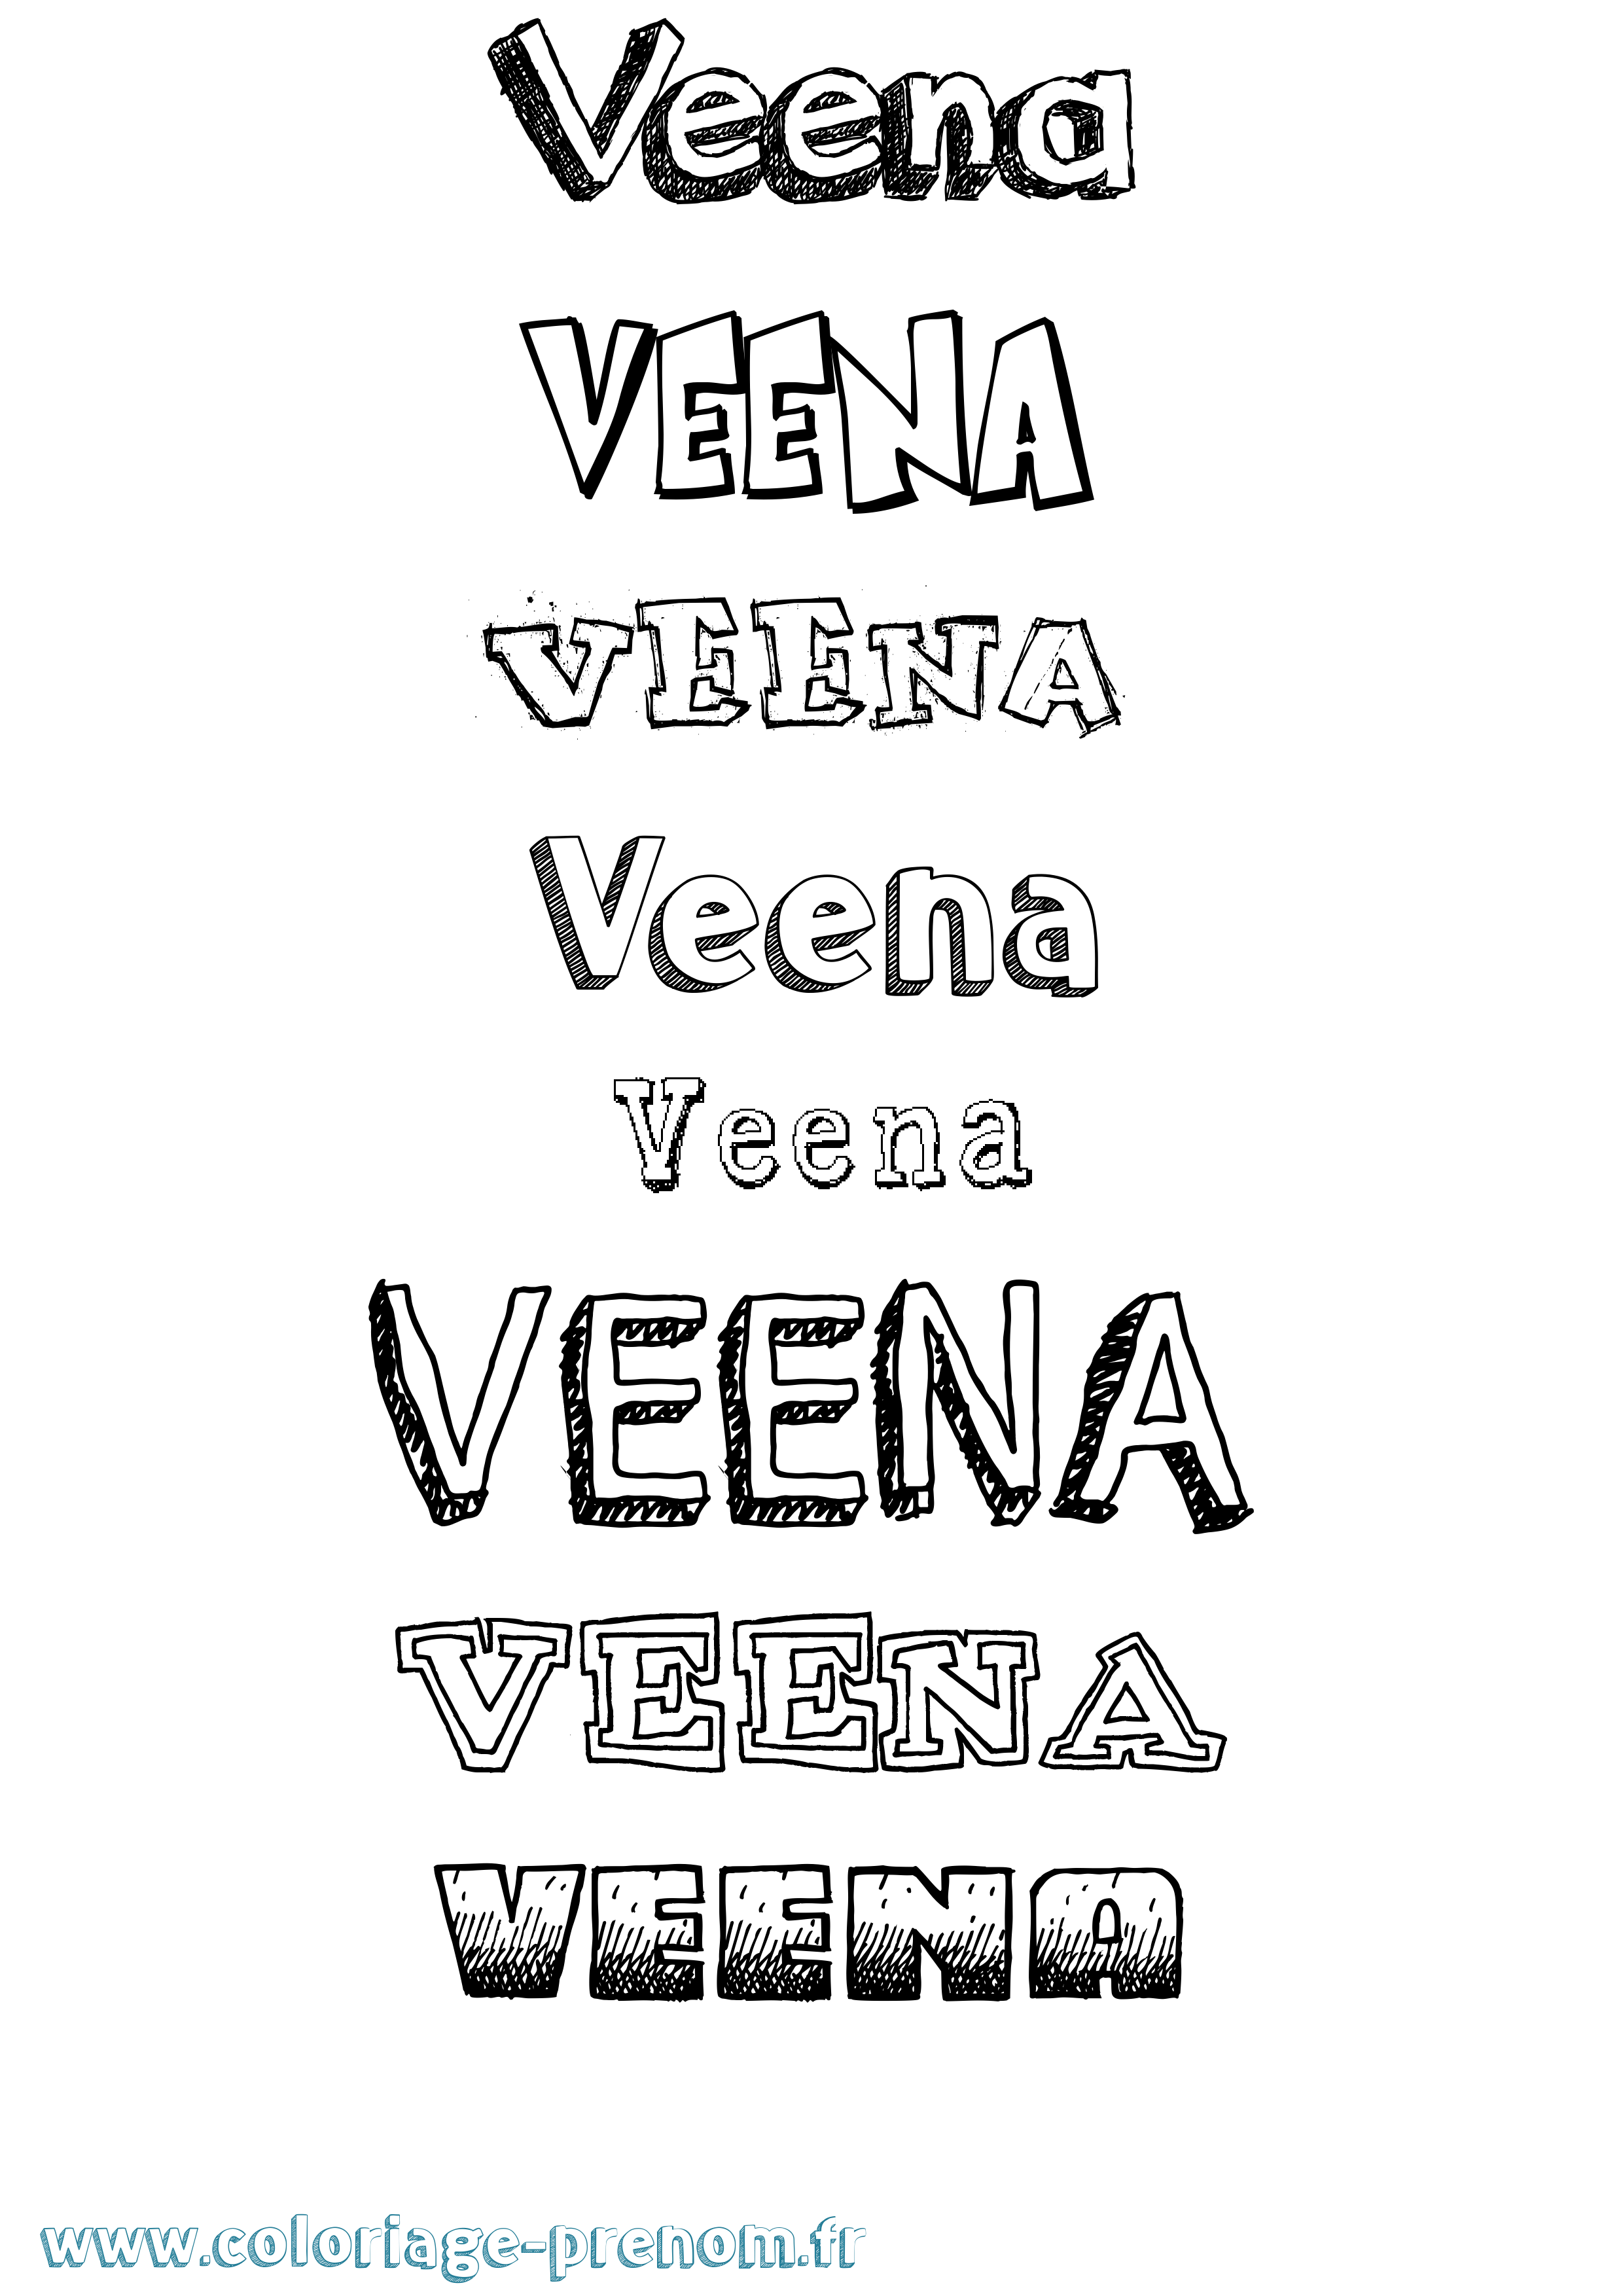 Coloriage prénom Veena Dessiné